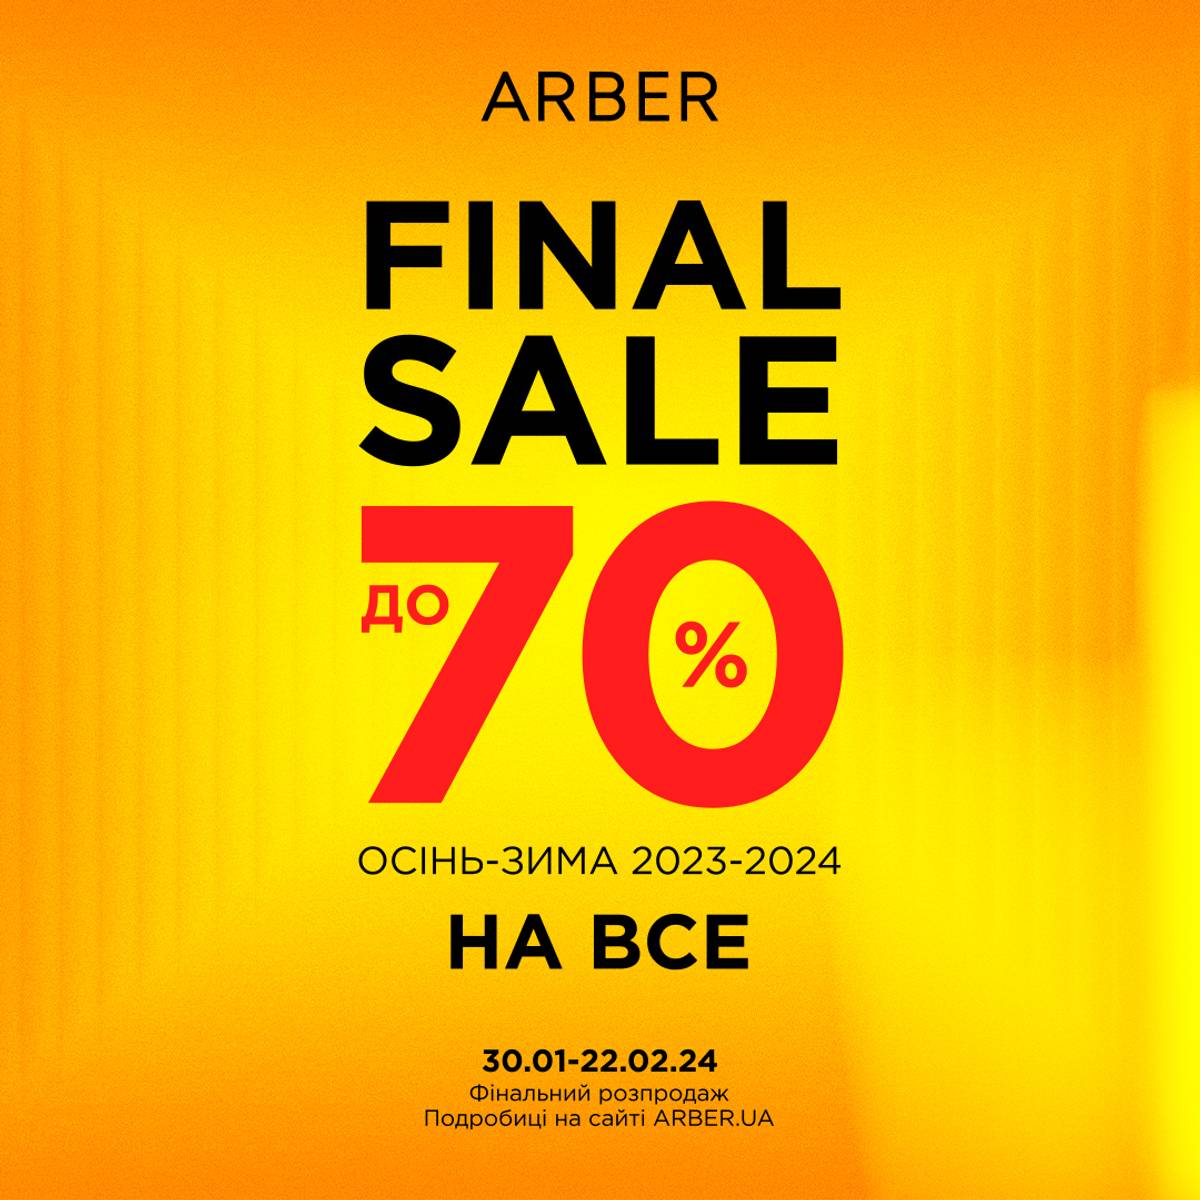 ARBER Final Sale